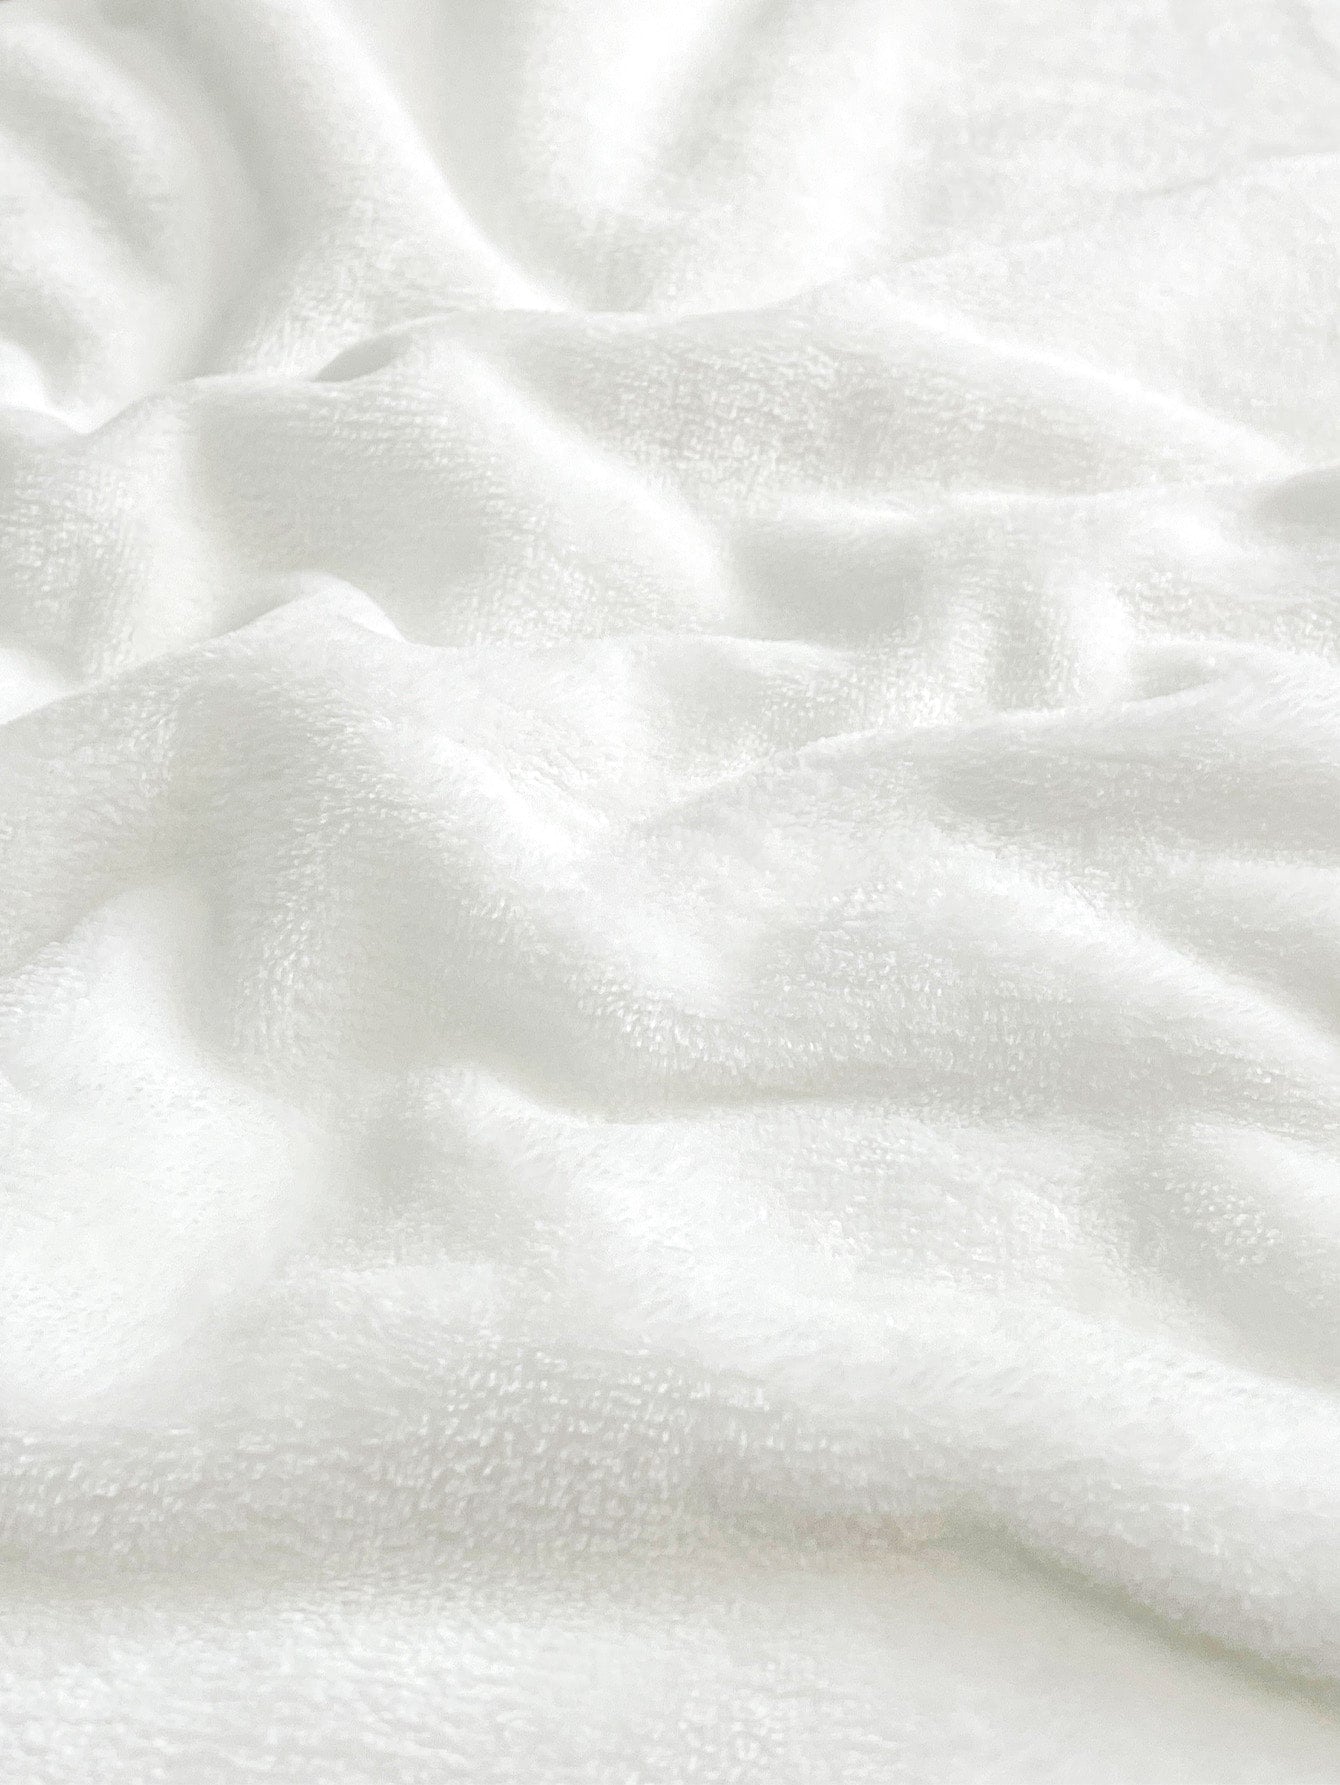 Mushroom Design Moon Blanket Floral Pattern Blanket, Fabric Soft & Warm Blanket For Living Room & Bedroom, Home Decor ShopOnlyDeal